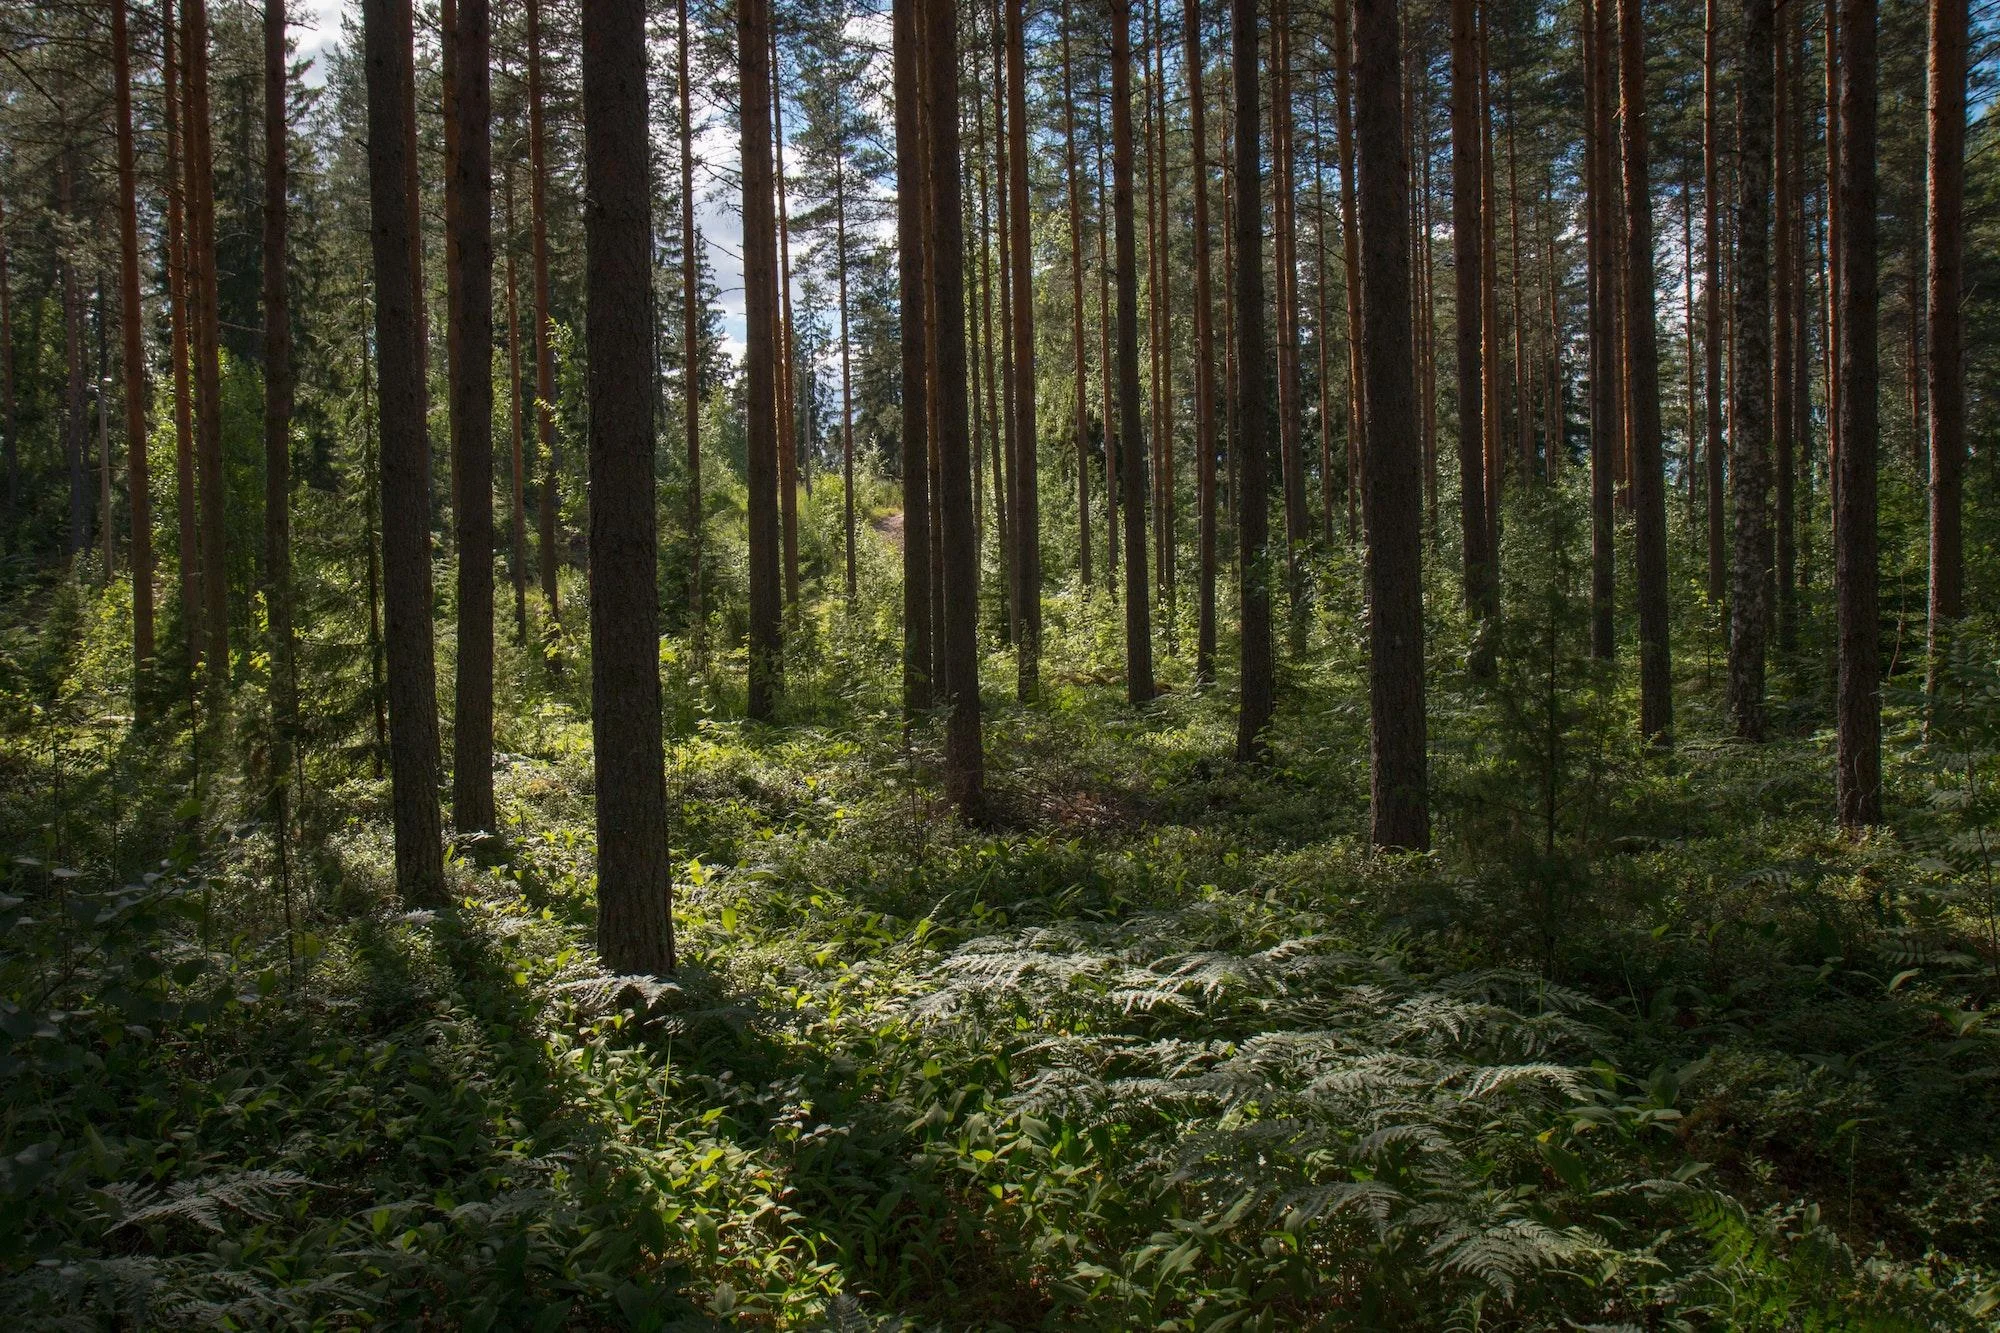 Combien de planètes faudrait-il pour compenser l’ensemble de nos émissions de CO2 en plantant des arbres ?